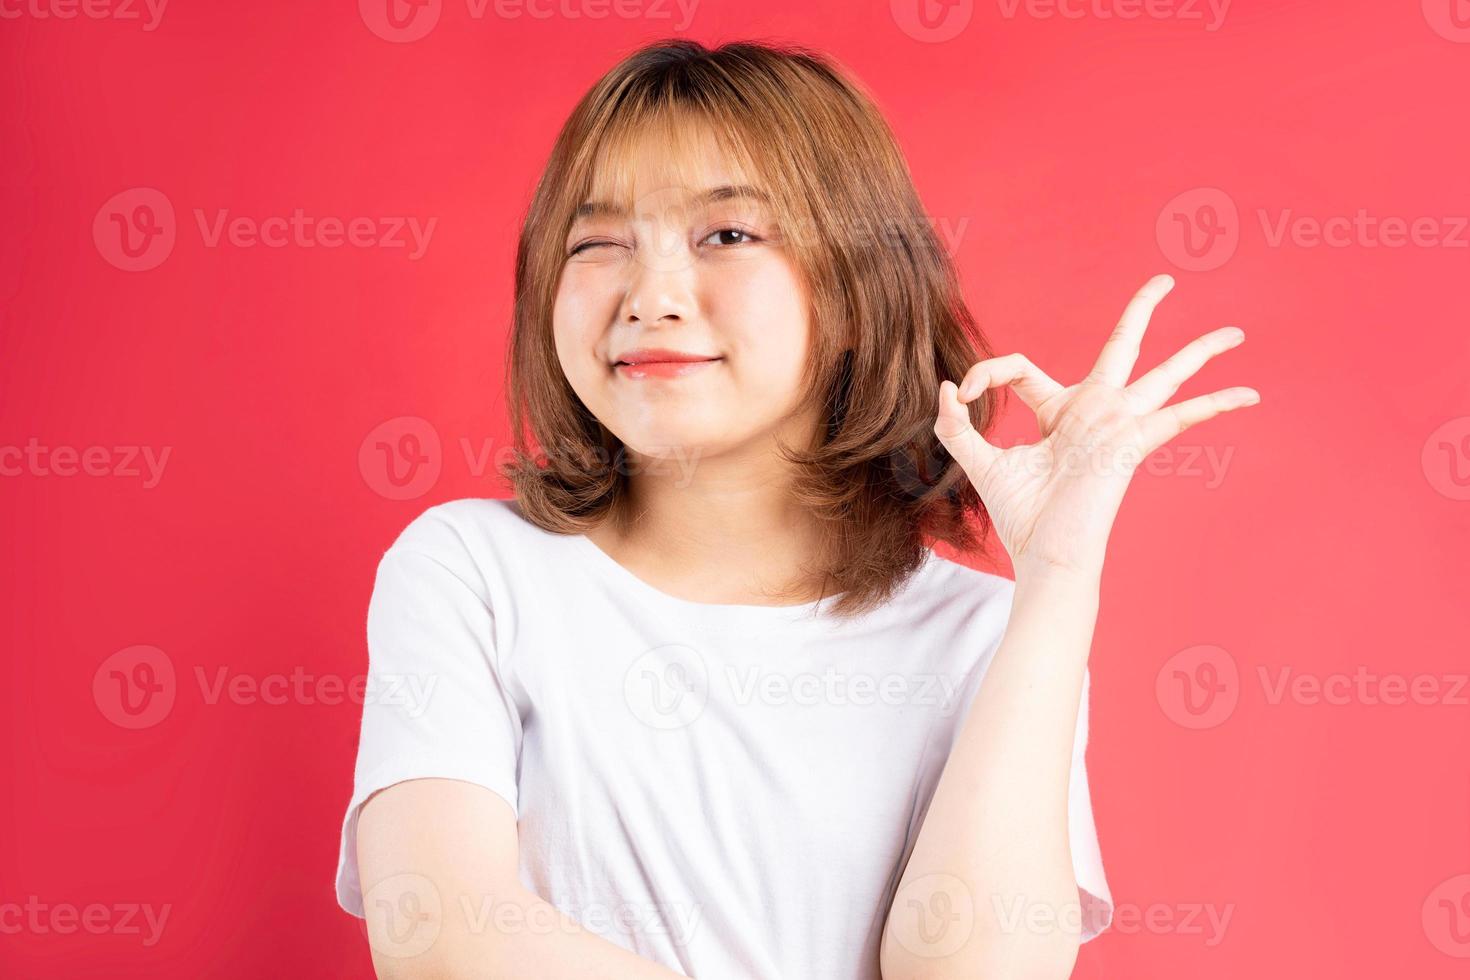 Joven asiática con gestos y expresiones alegres en el fondo foto